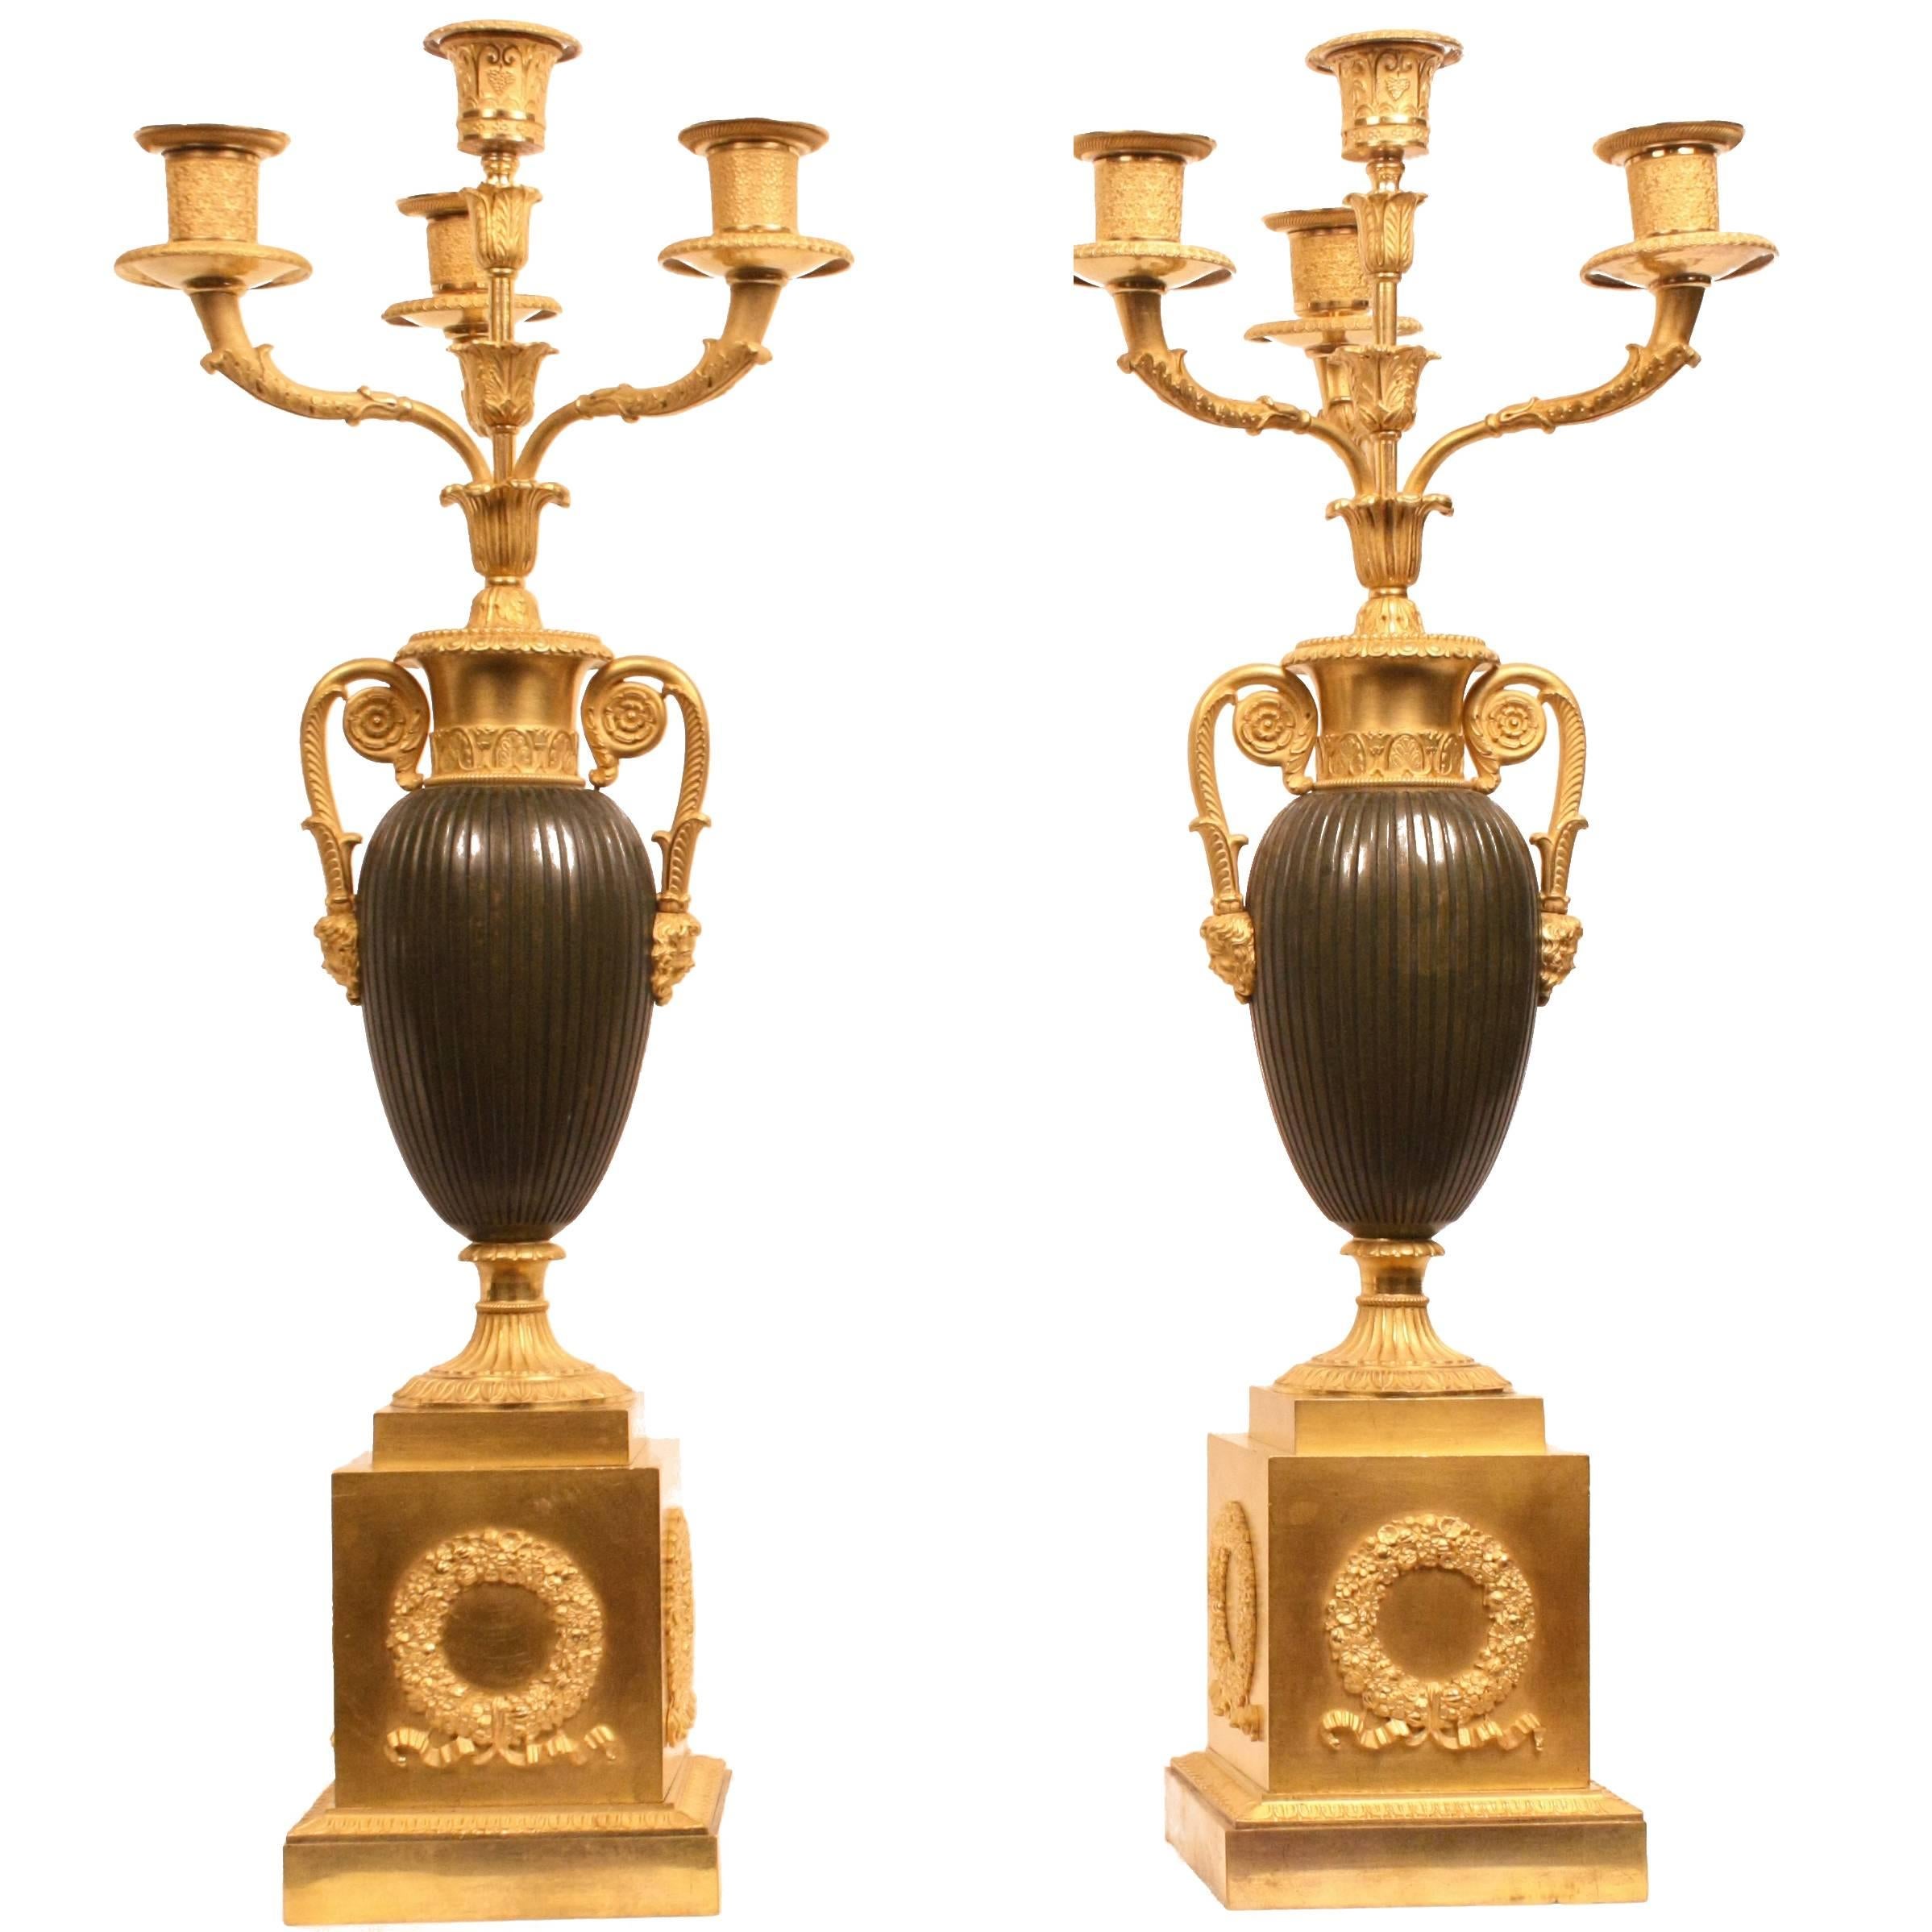 Paire de candélabres français en bronze doré du début du XIXe siècle